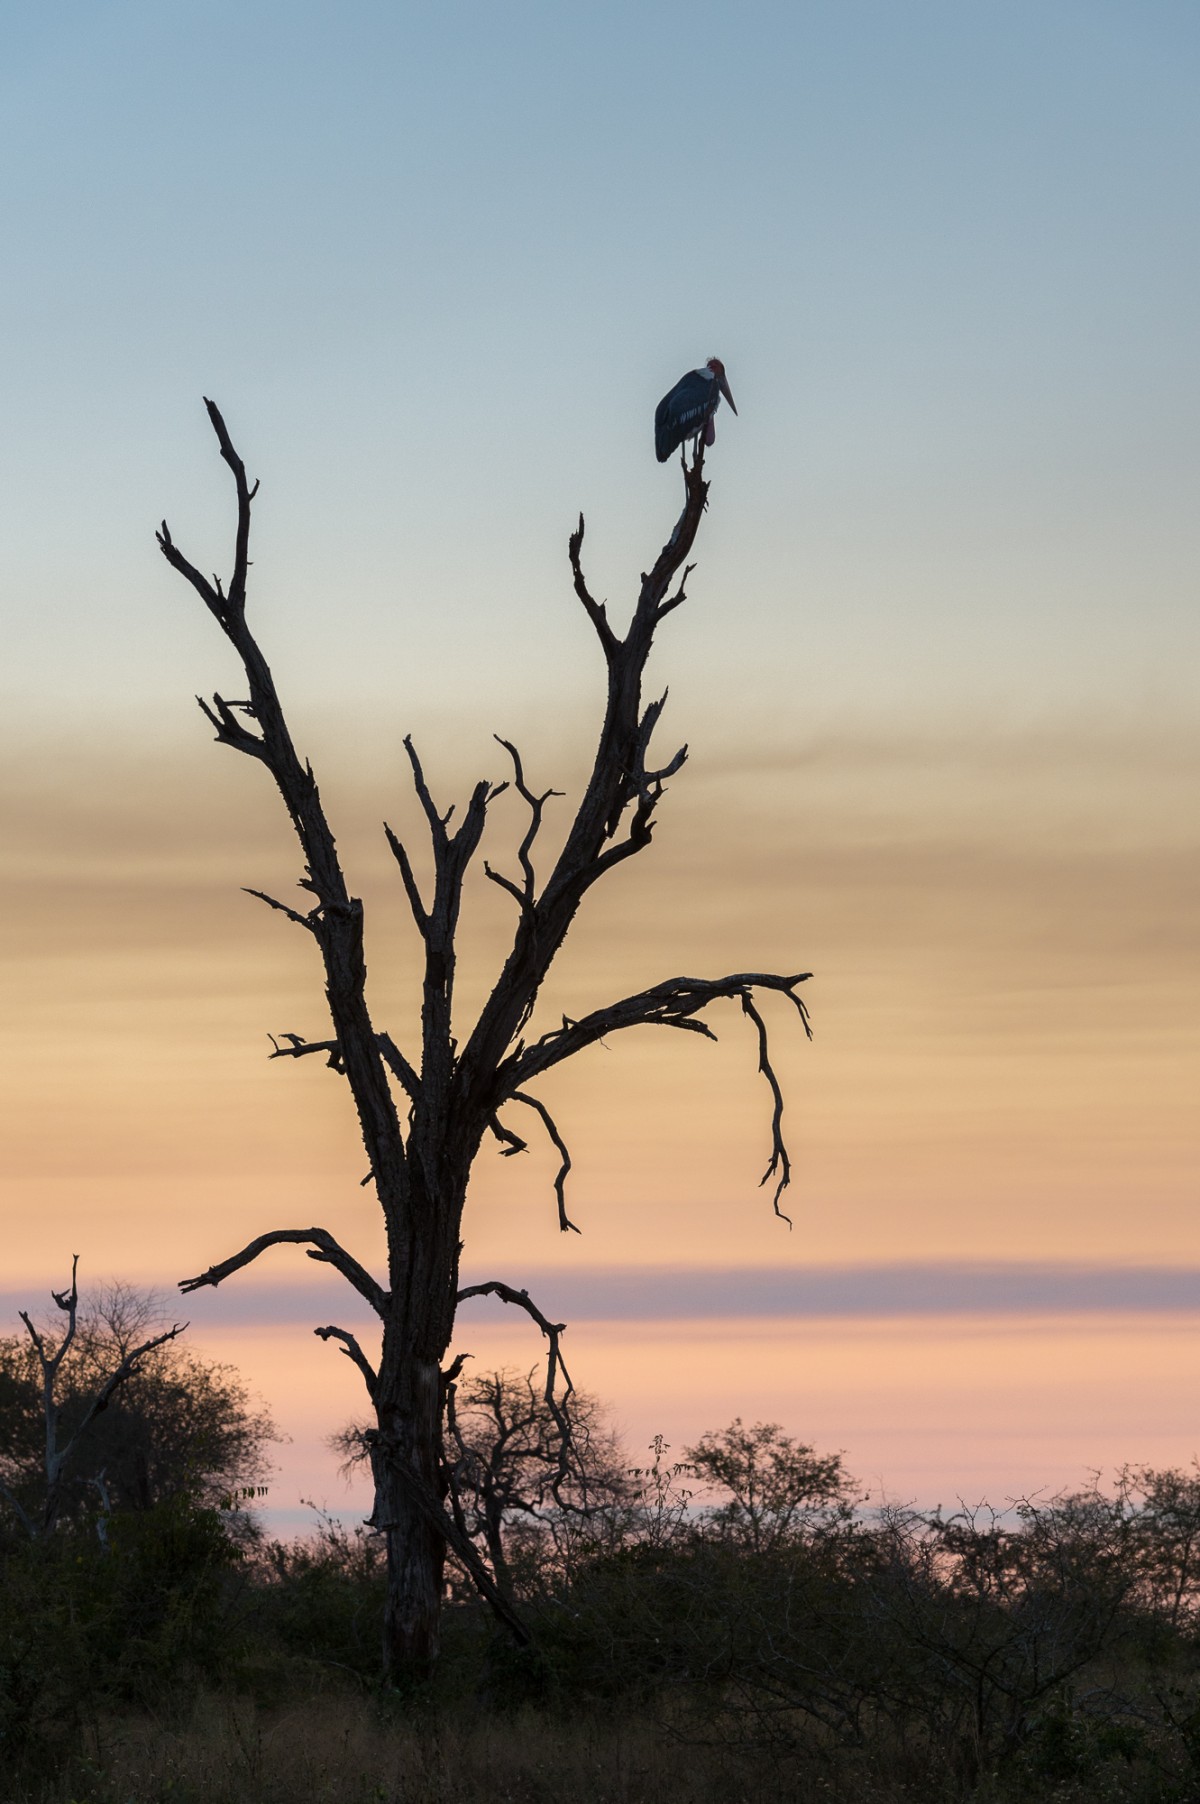 Marabou stork during sunset